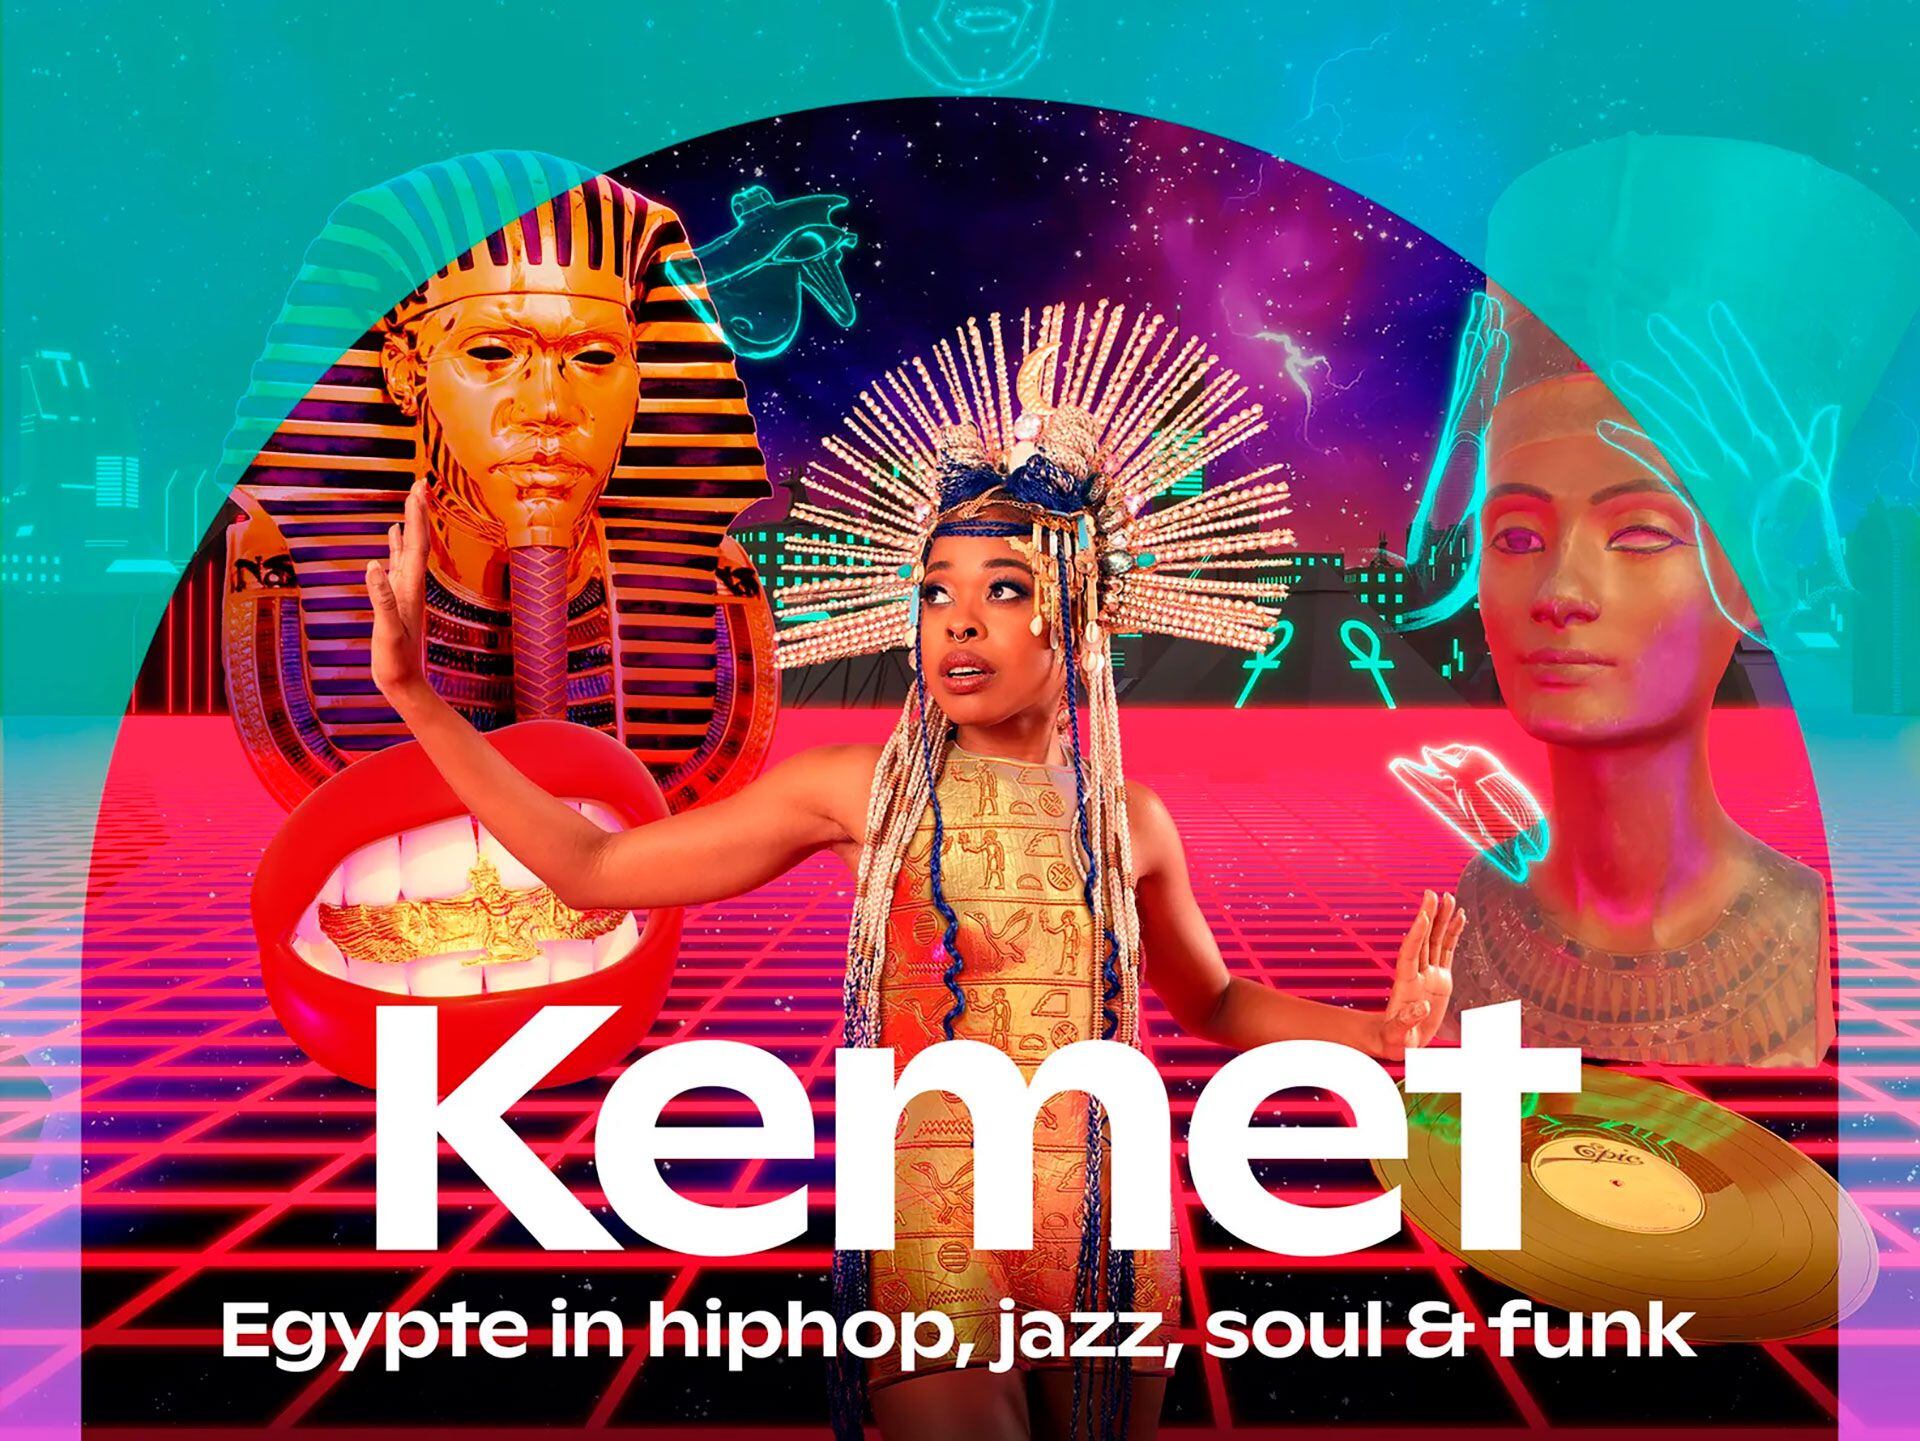 "Egipto en el hip-hop, jazz, soul y funk"